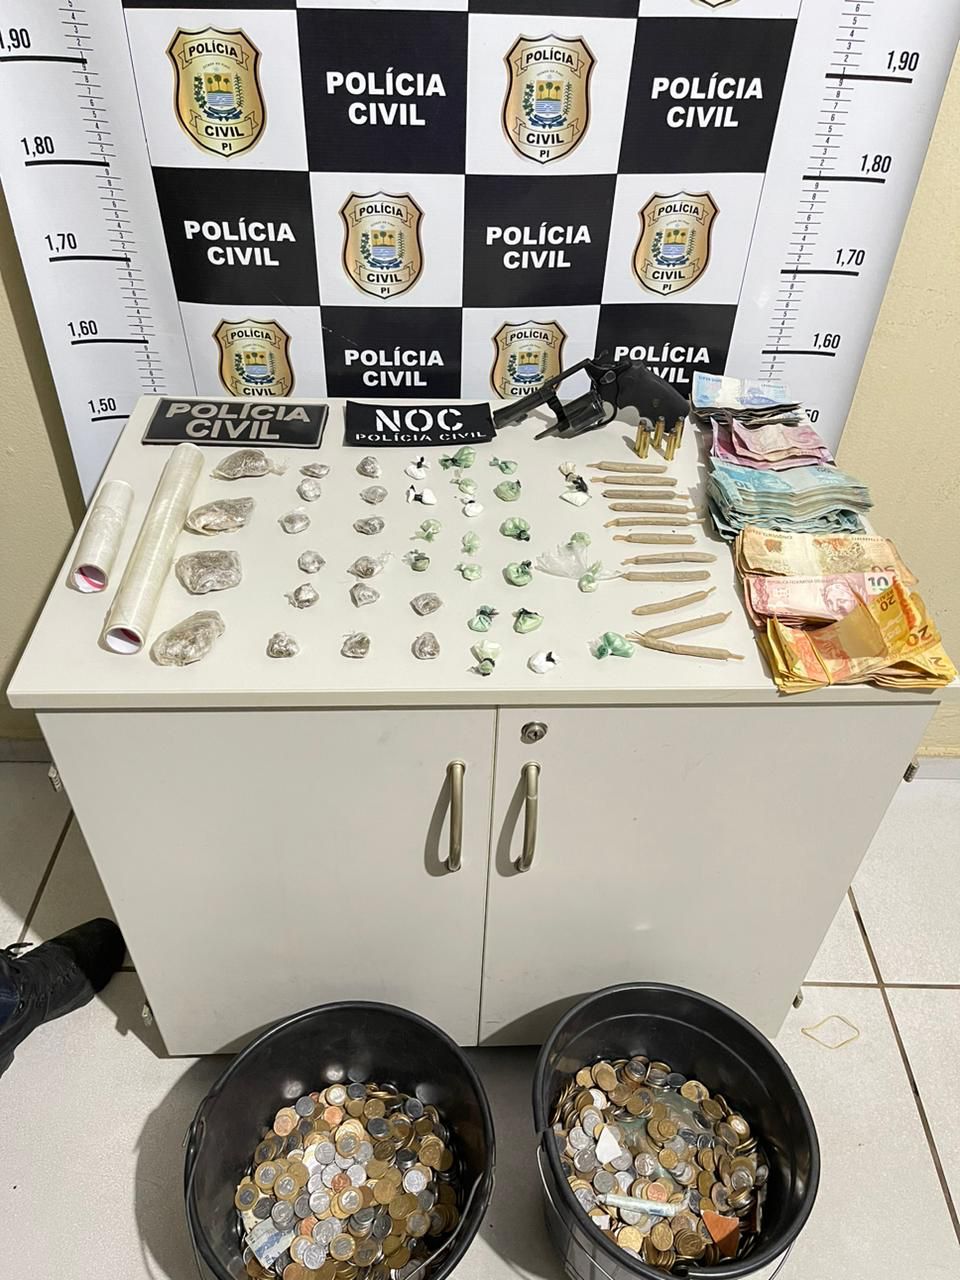 Acusado de comercializar drogas é preso em Sussuapara; quantia de R$12 mil foi apreendida.